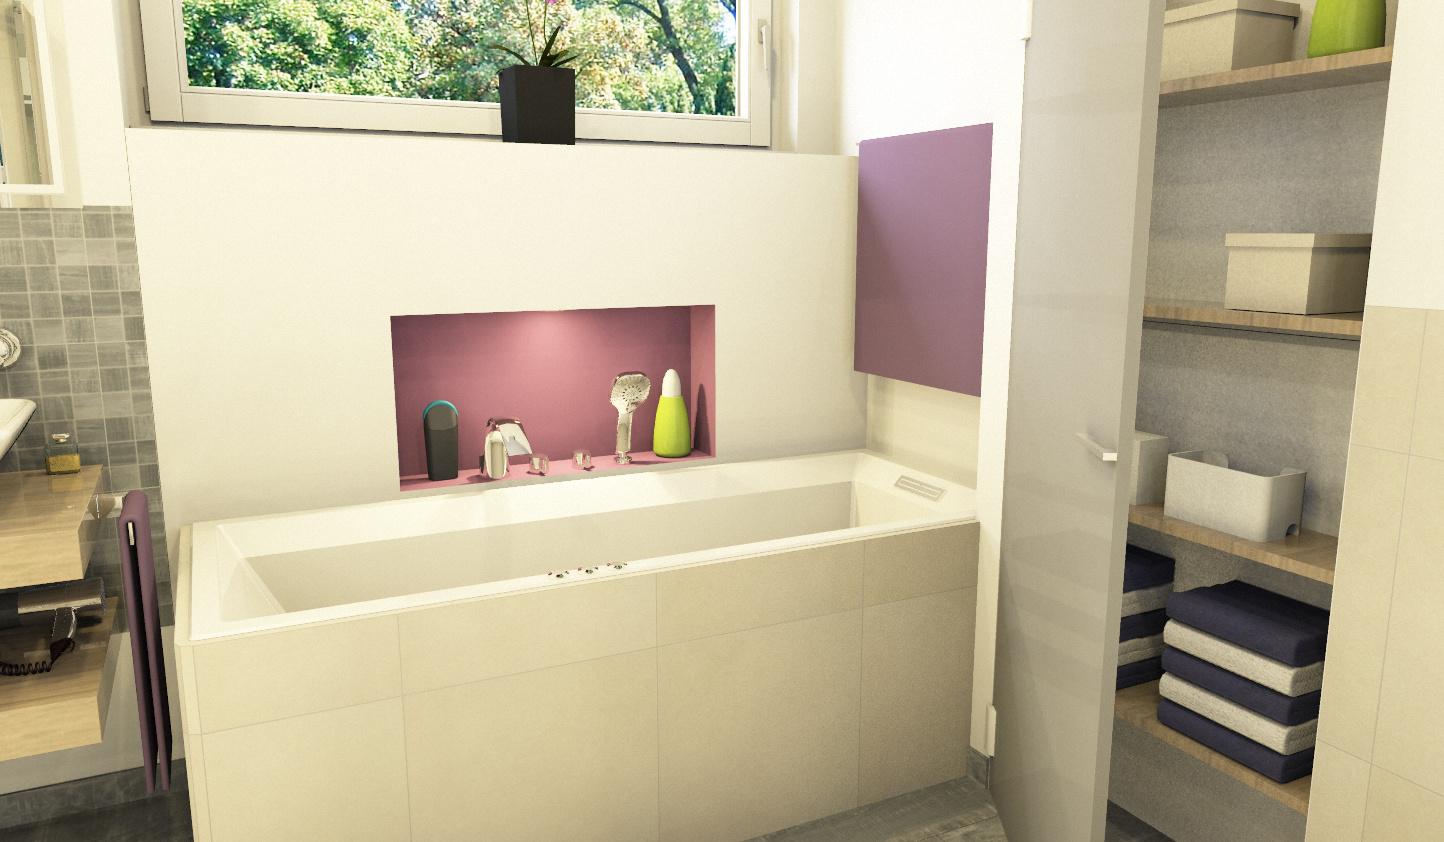 Einbauschrank #badewanne #badezimmerschrank #einbauschrank ©www.mlb-badplanung.de